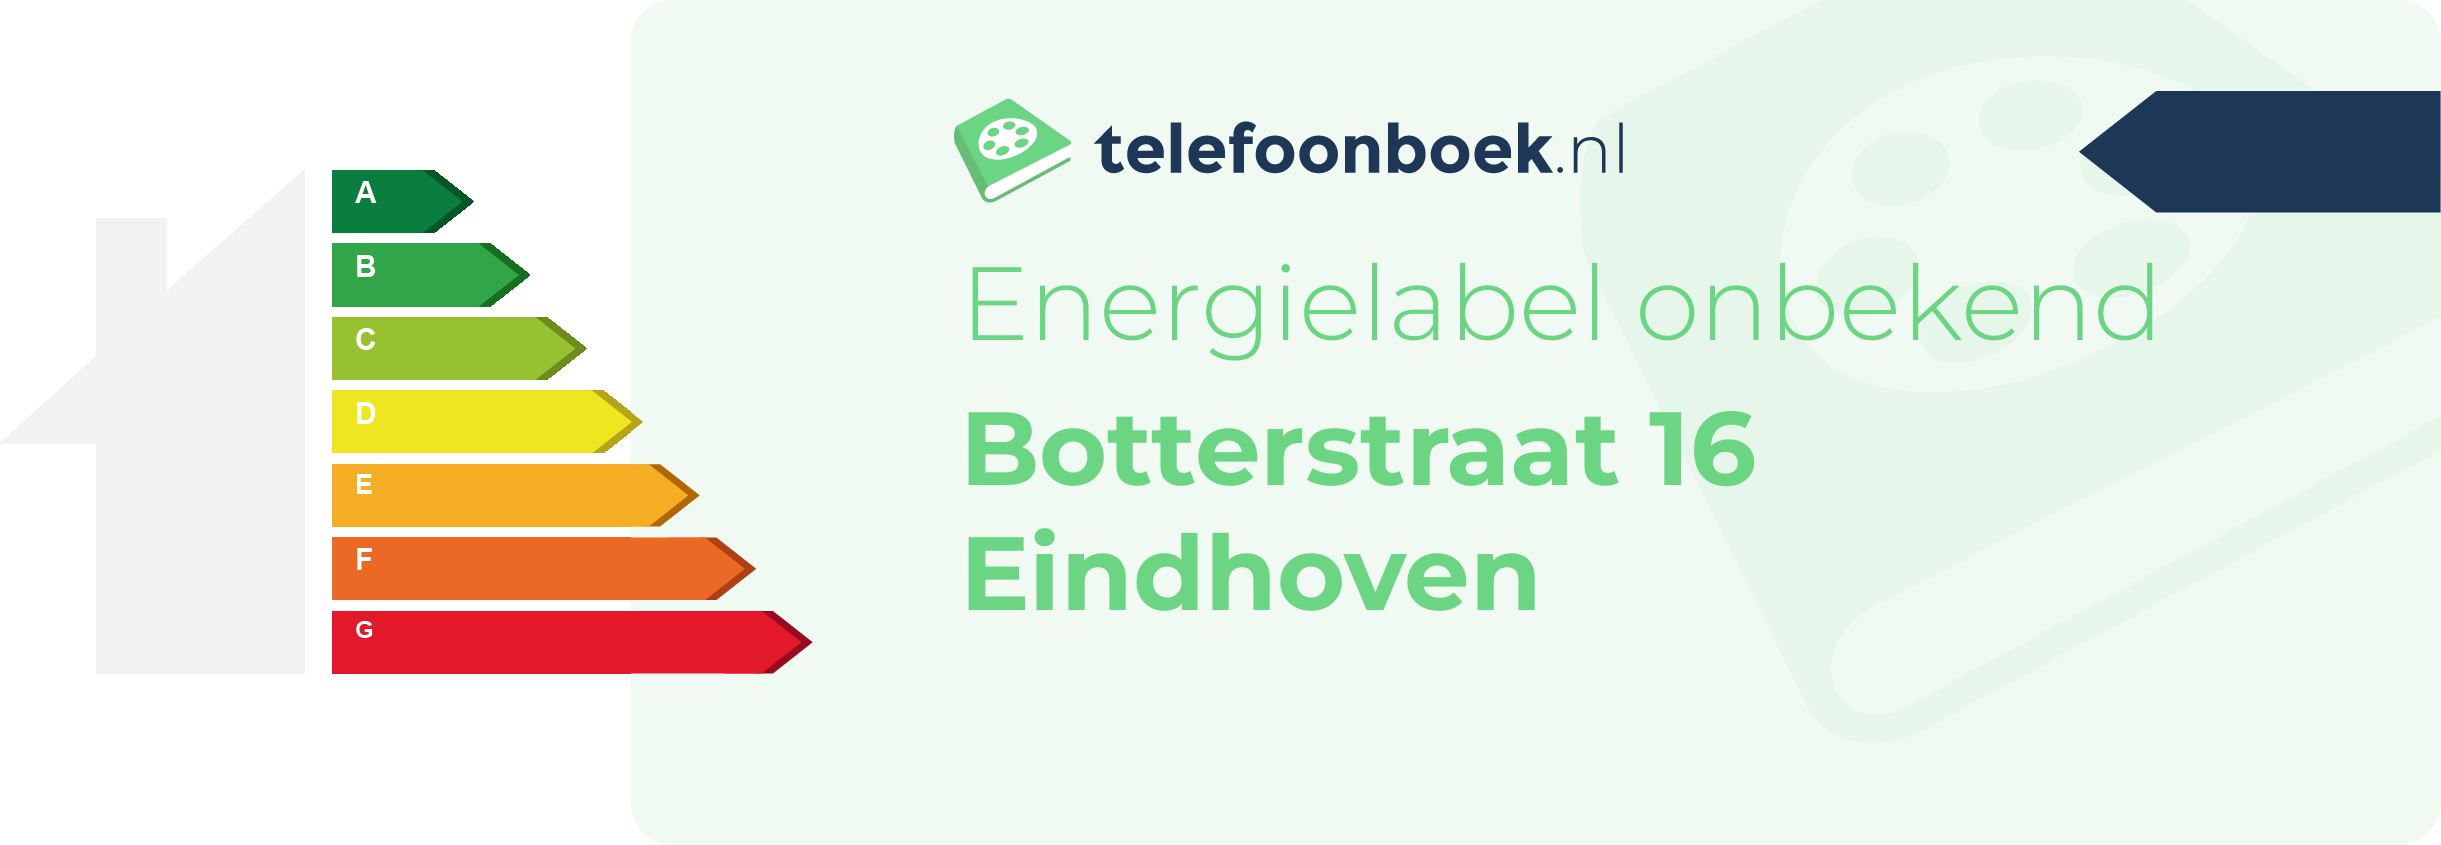 Energielabel Botterstraat 16 Eindhoven